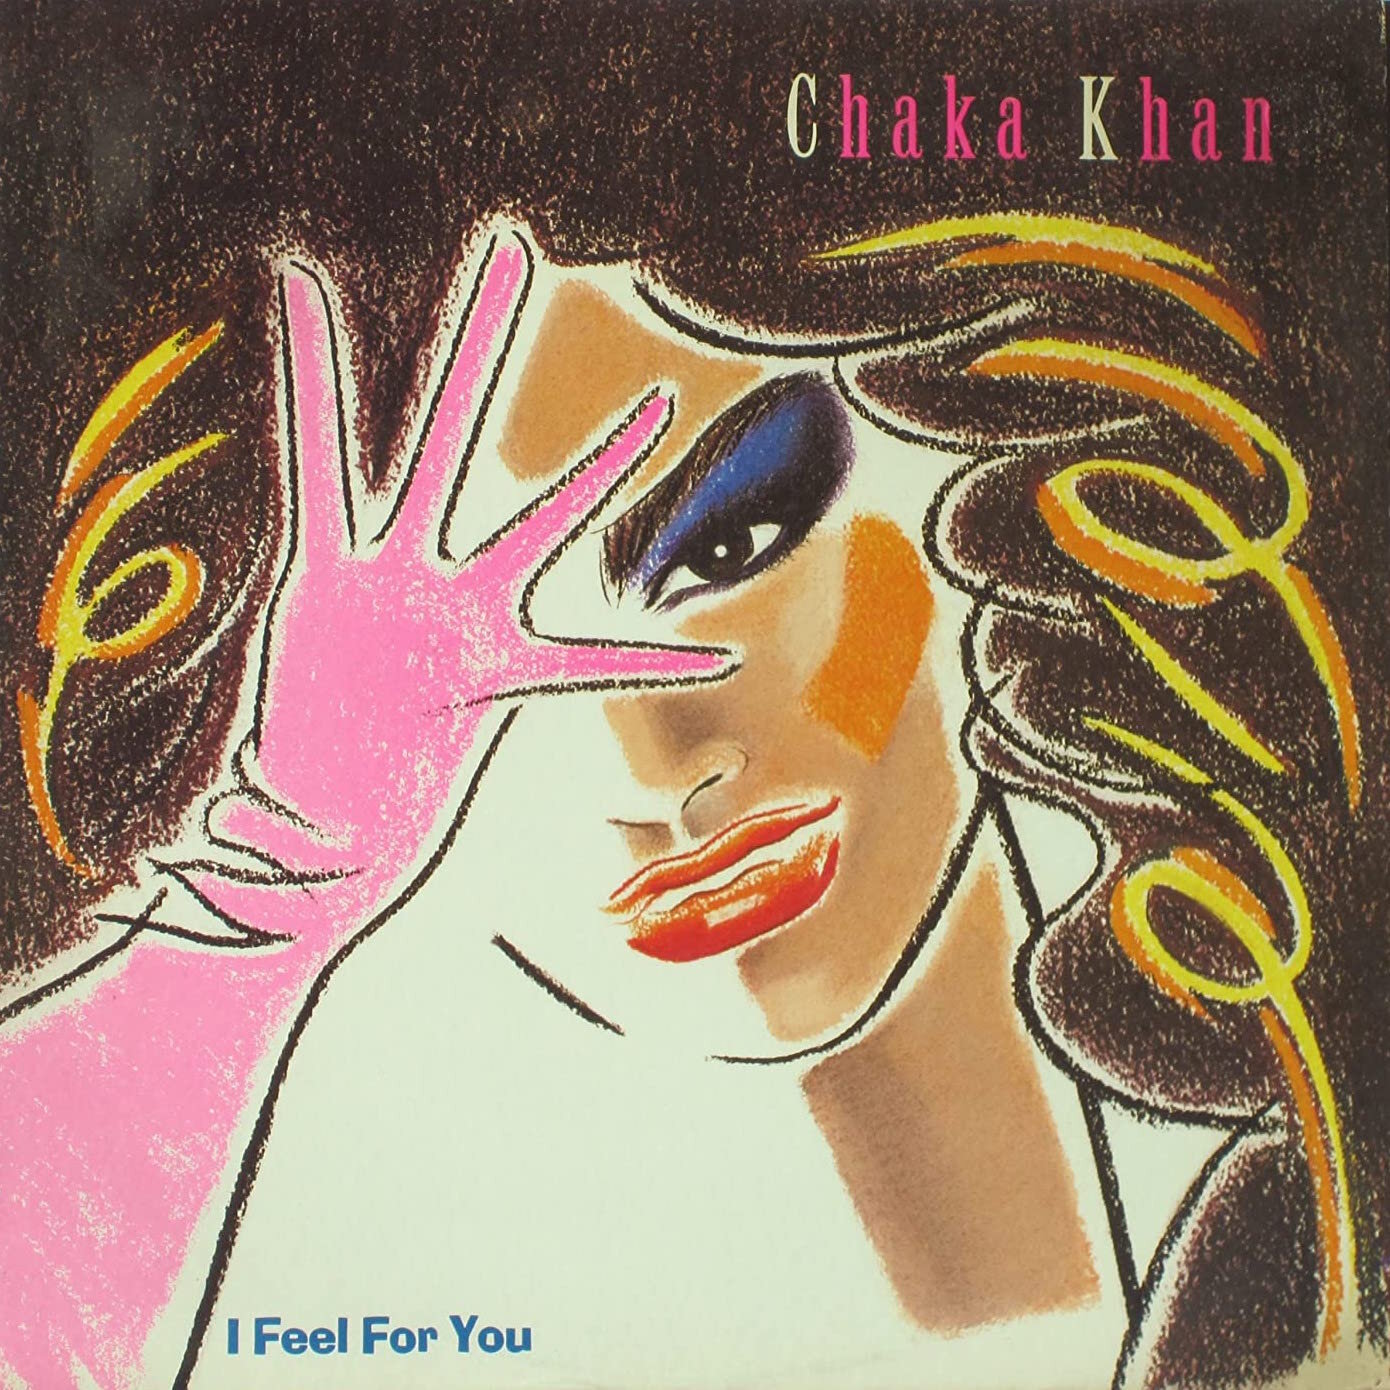 (20) I Feel For You - Chaka Khan.jpg